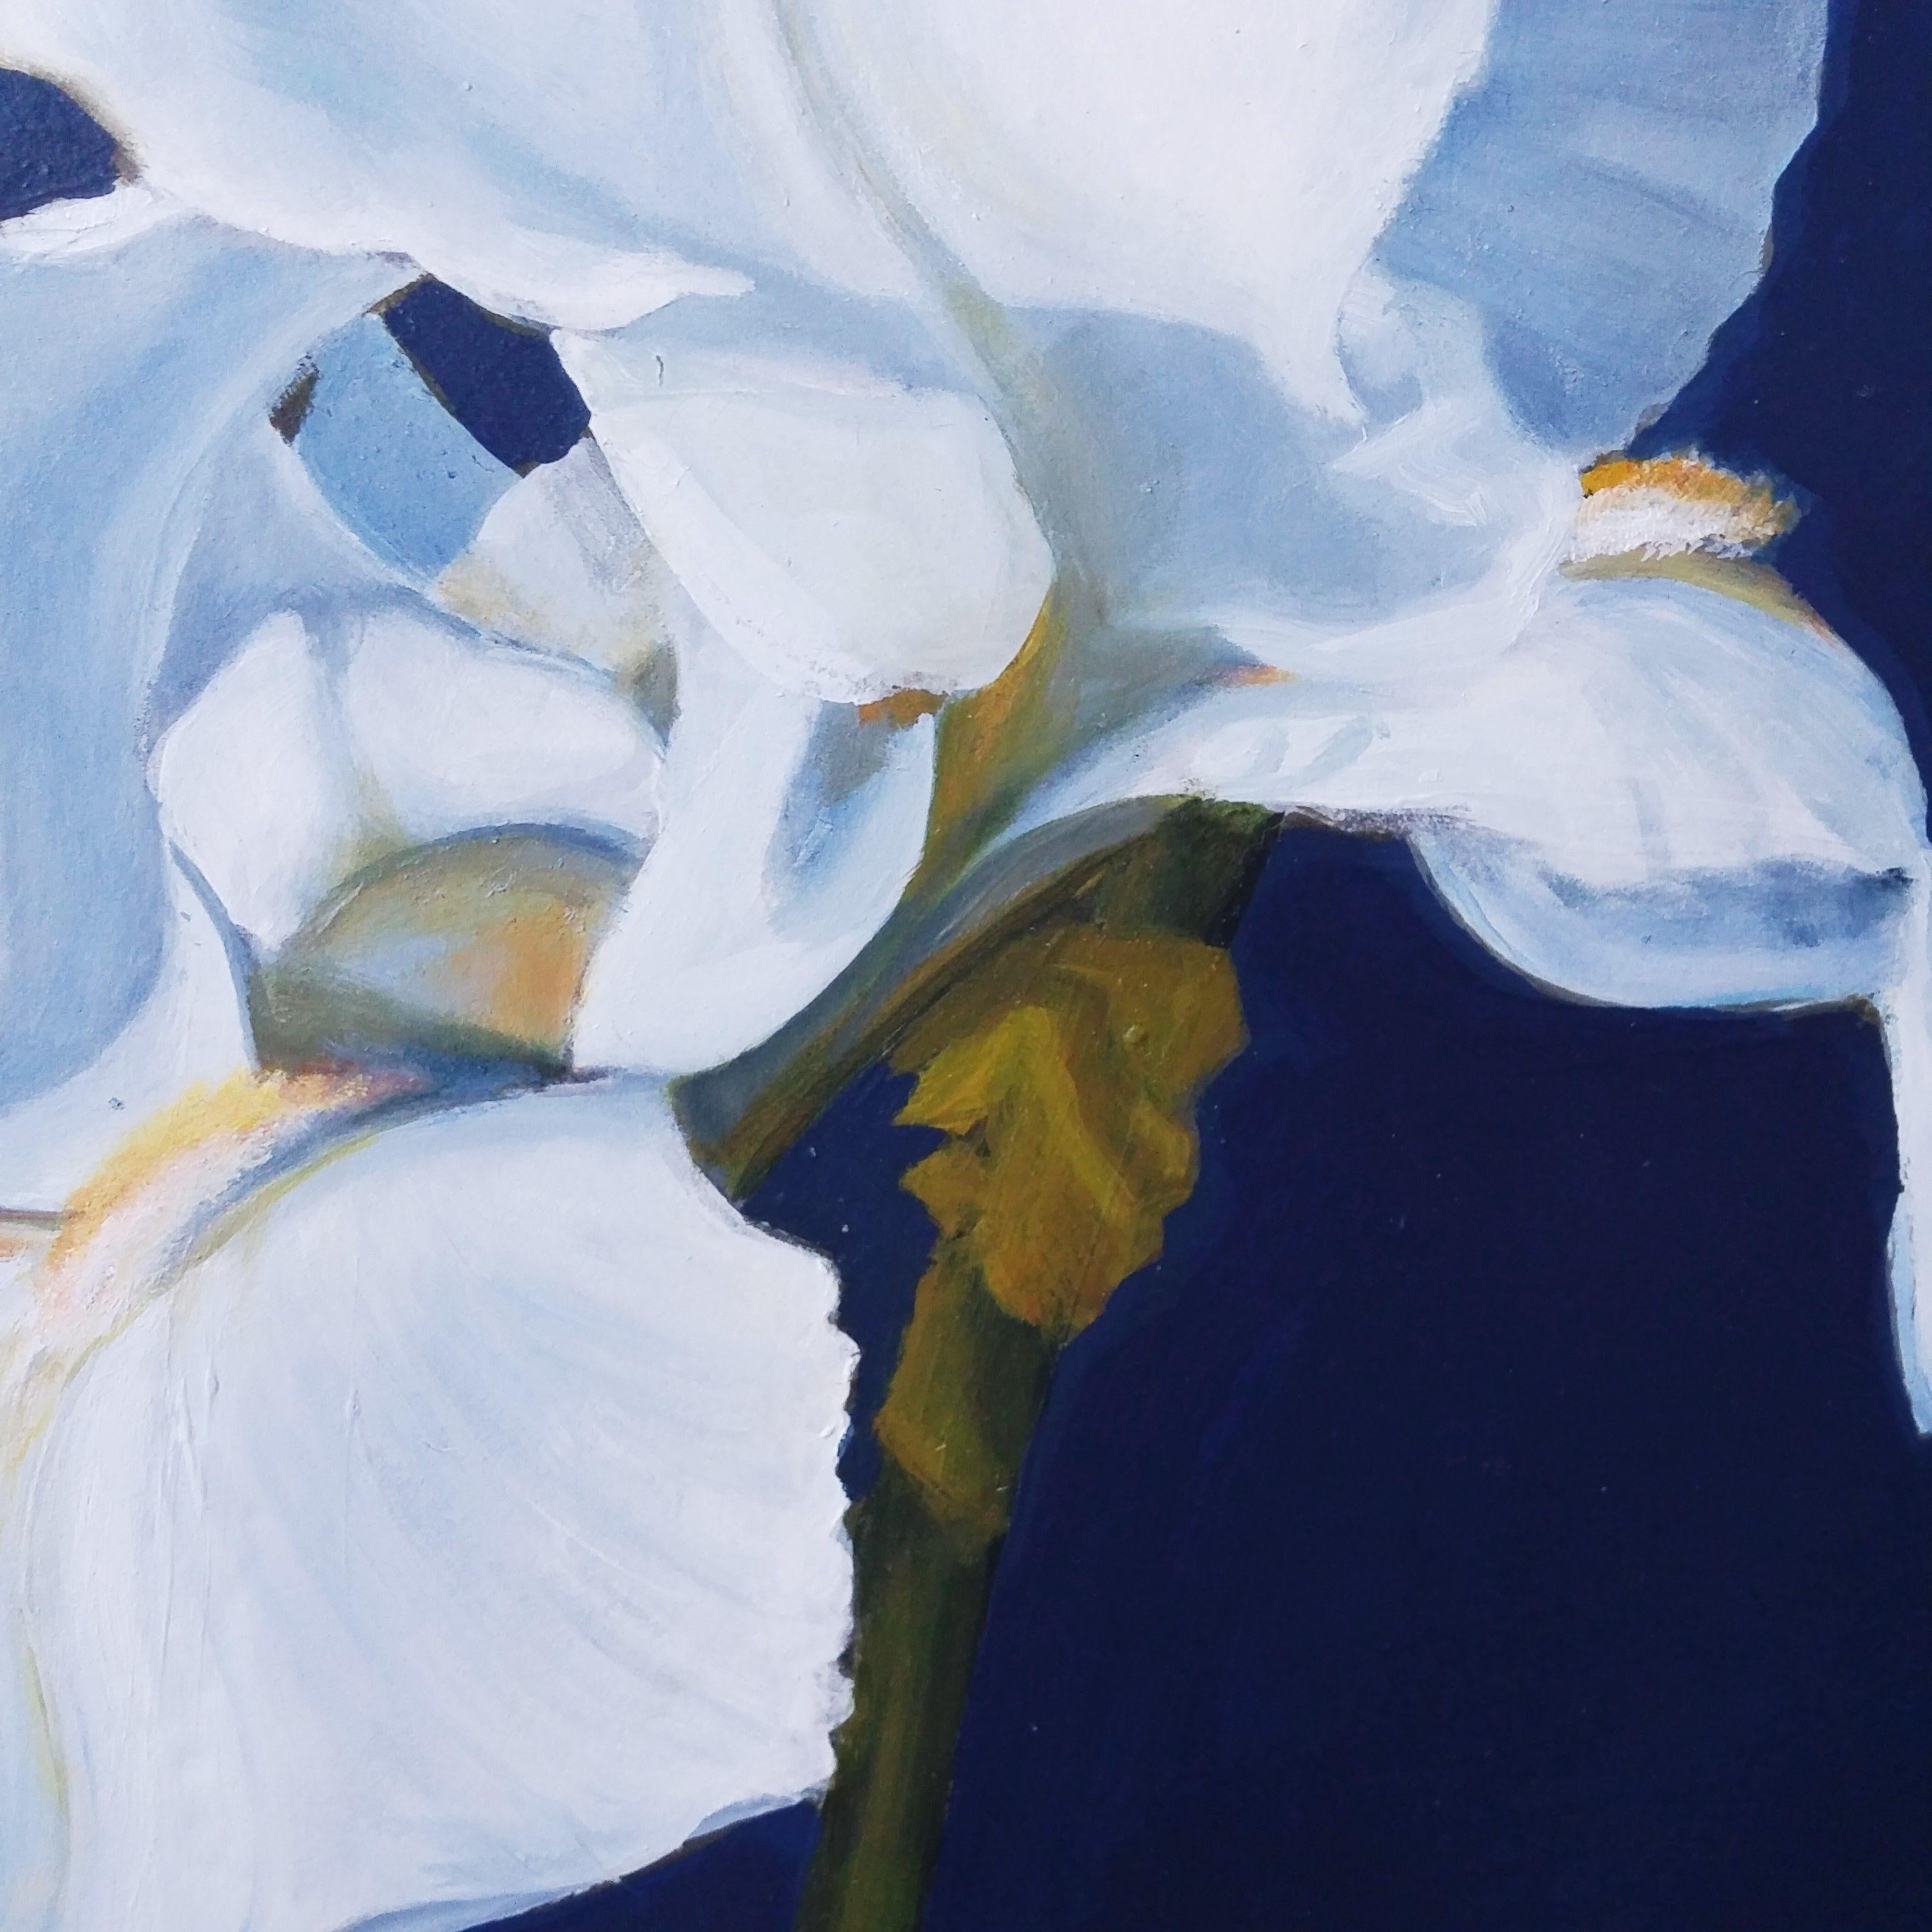 Weiße Iris, dramatisch umrahmt von einem tief mitternachtsblauen Hintergrund. Das Blau dringt durch die durchscheinenden Blütenblätter ein und erzeugt eine Reihe von helleren Blautönen. Japanischer Stil, so genannt, weil der Raum zwischen den Blumen